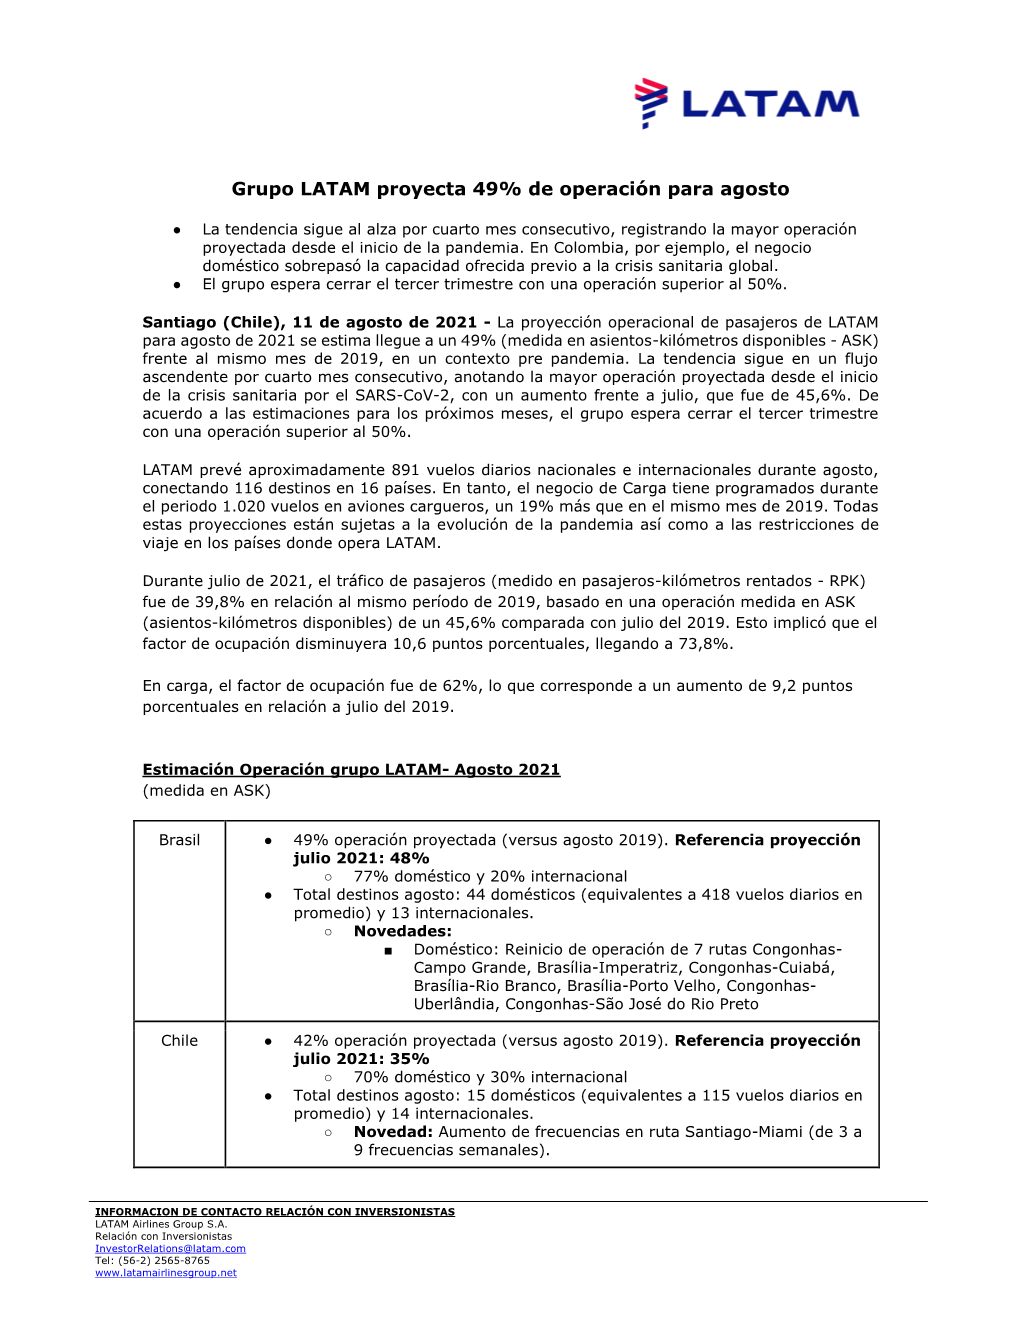 Grupo LATAM Proyecta 49% De Operación Para Agosto